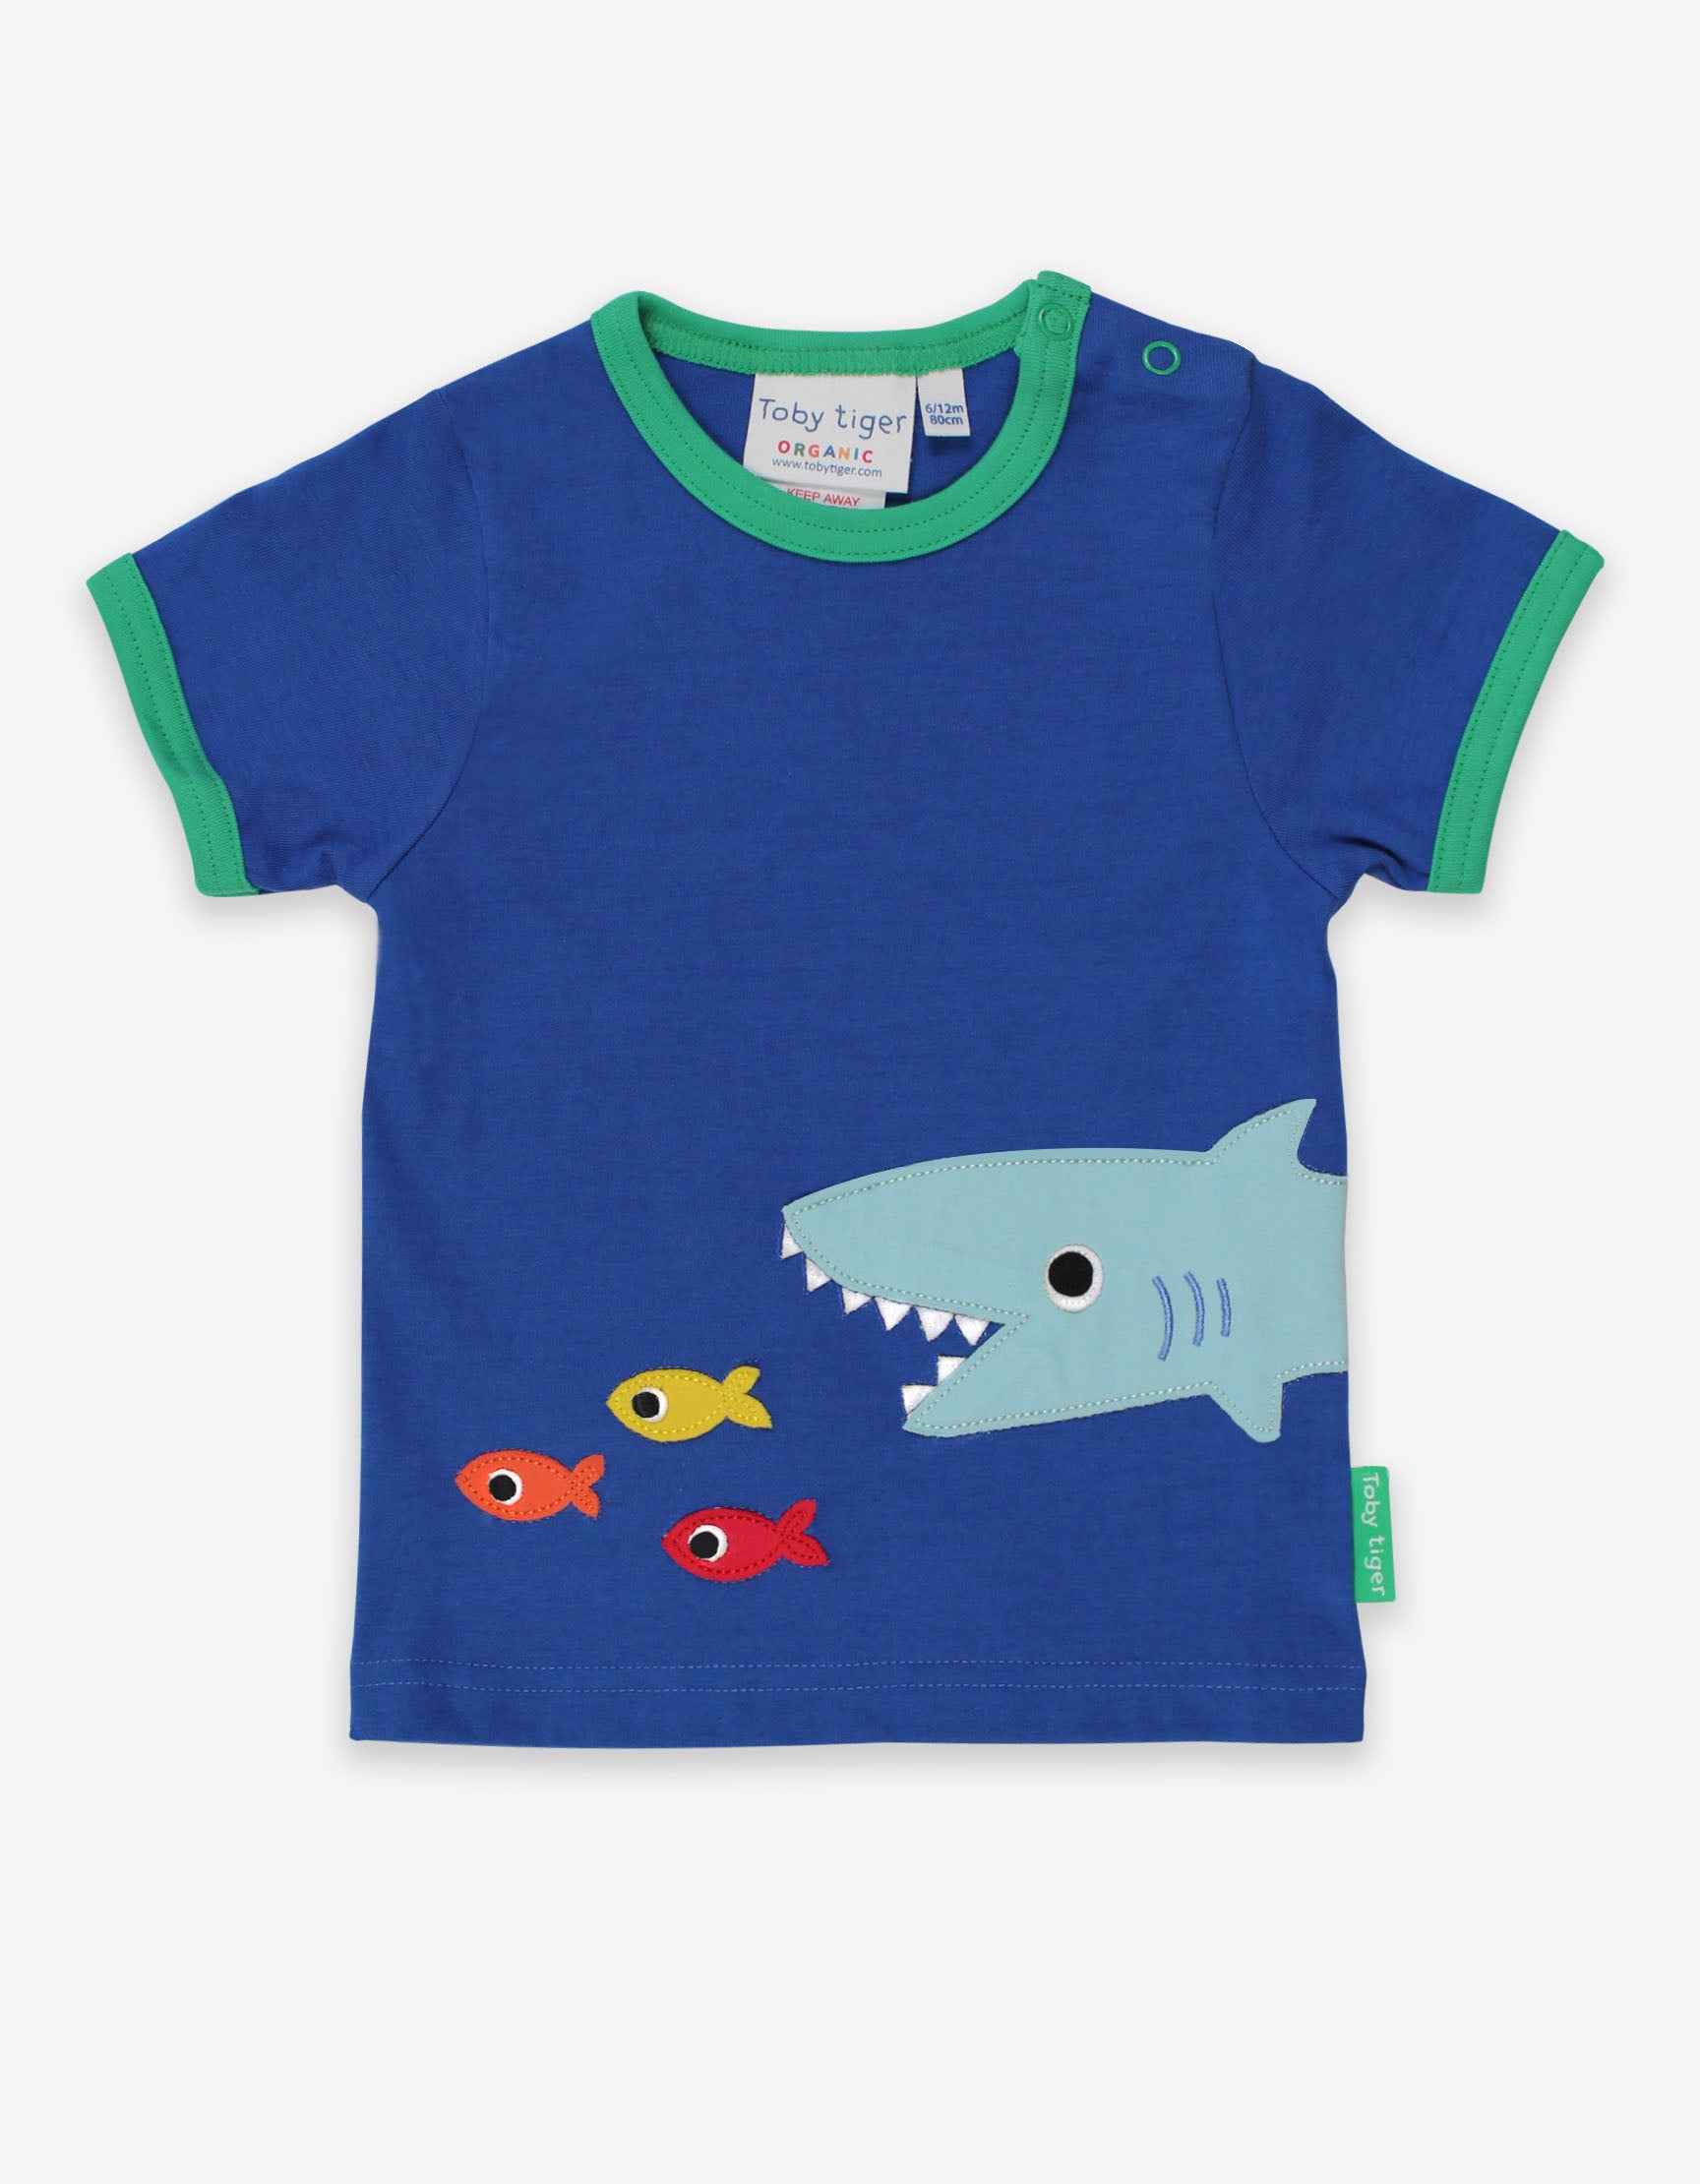 Toby Tiger Organic Short Sleeve T-Shirt - Shark Applique